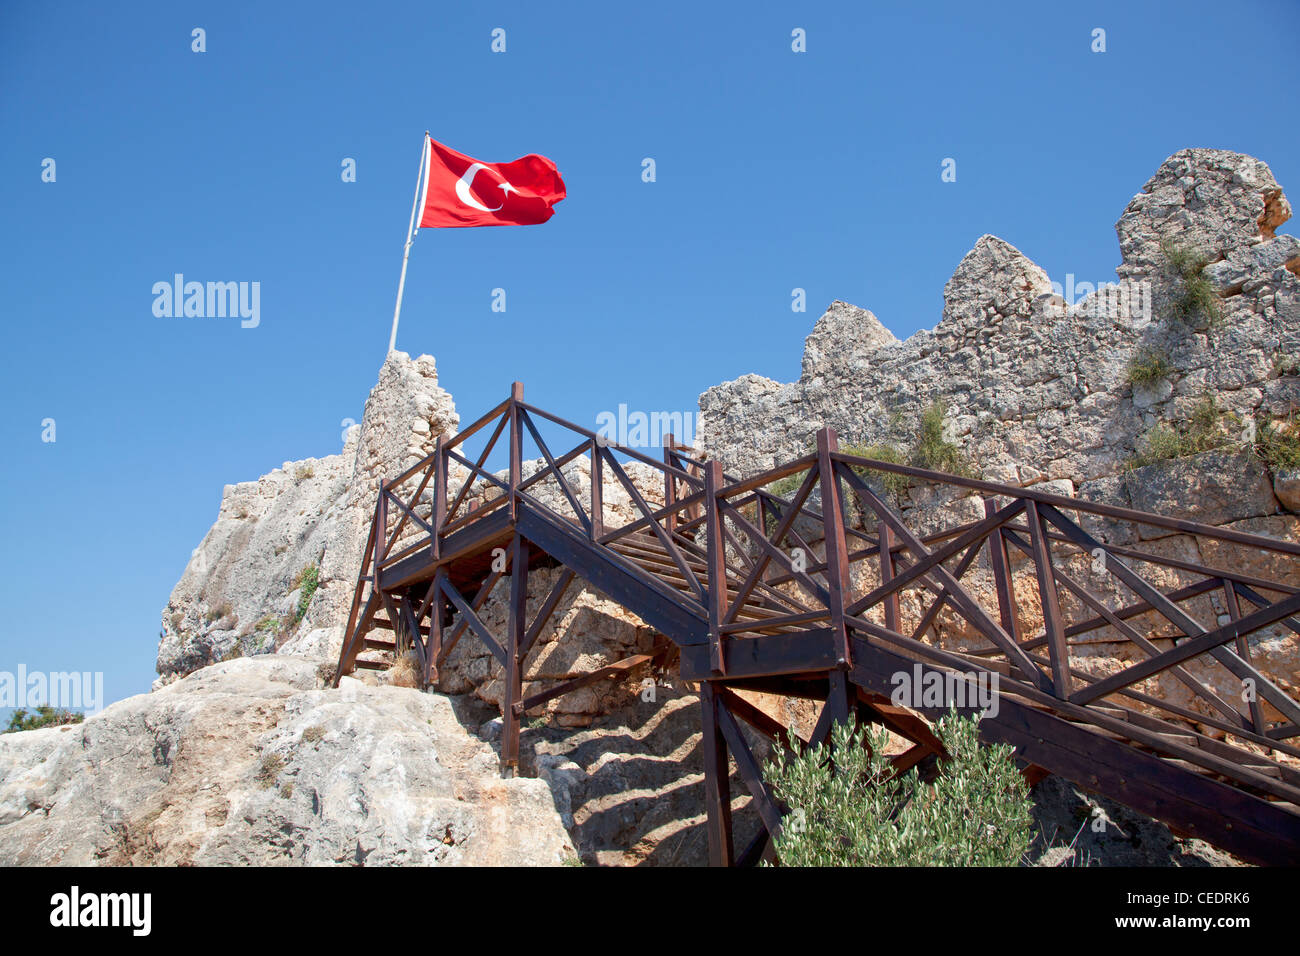 Turkey, Kalekoy, steps leading up to old fort, Turkish flag flying Stock Photo